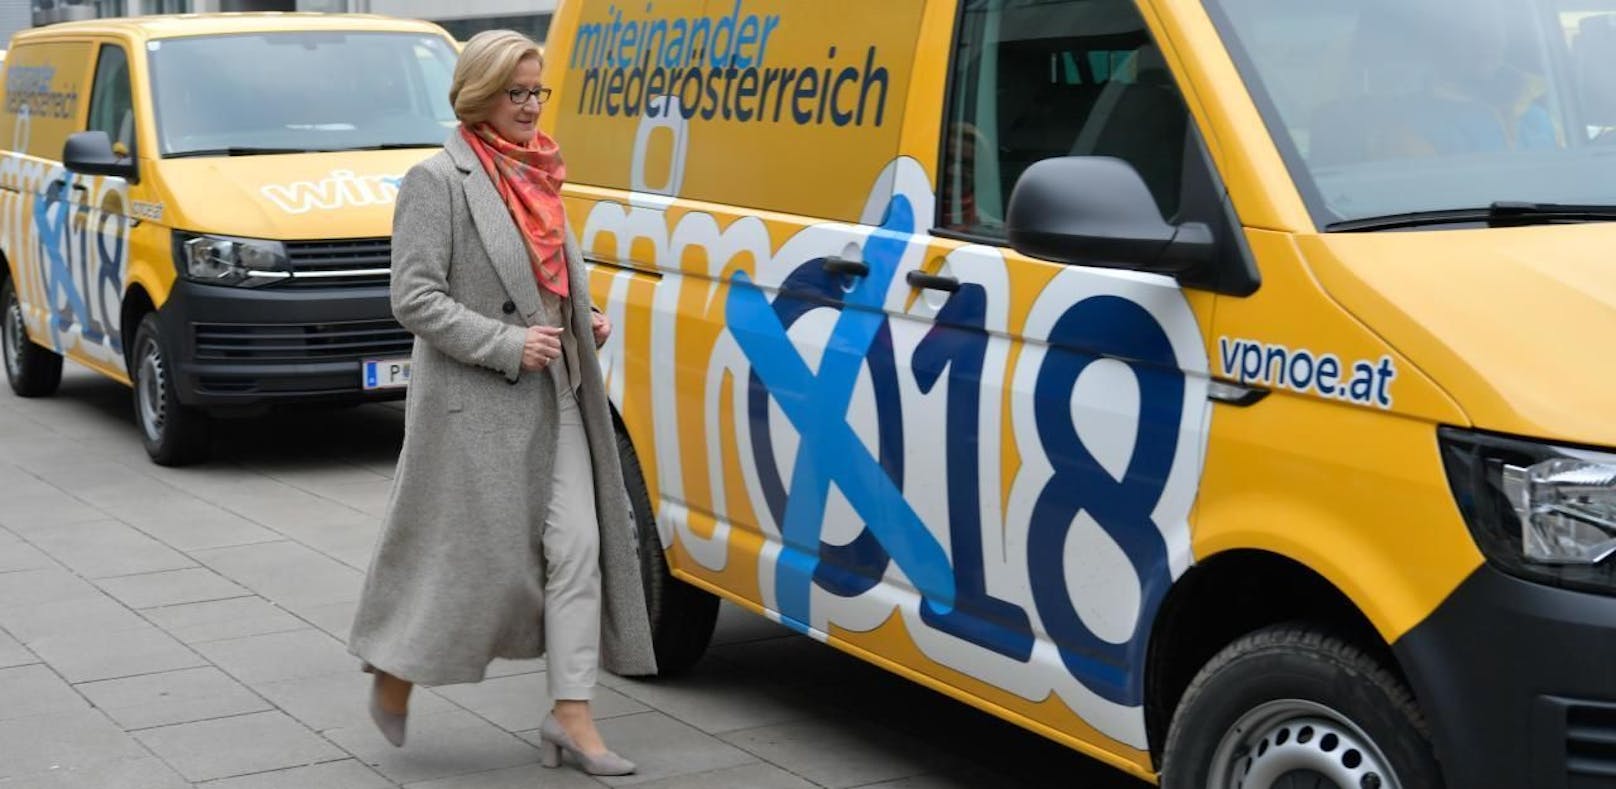 Die auffällig gefärbten Wahlkampfautos begleiten Mikl-Leitner bei ihrer Tour durch NÖ.